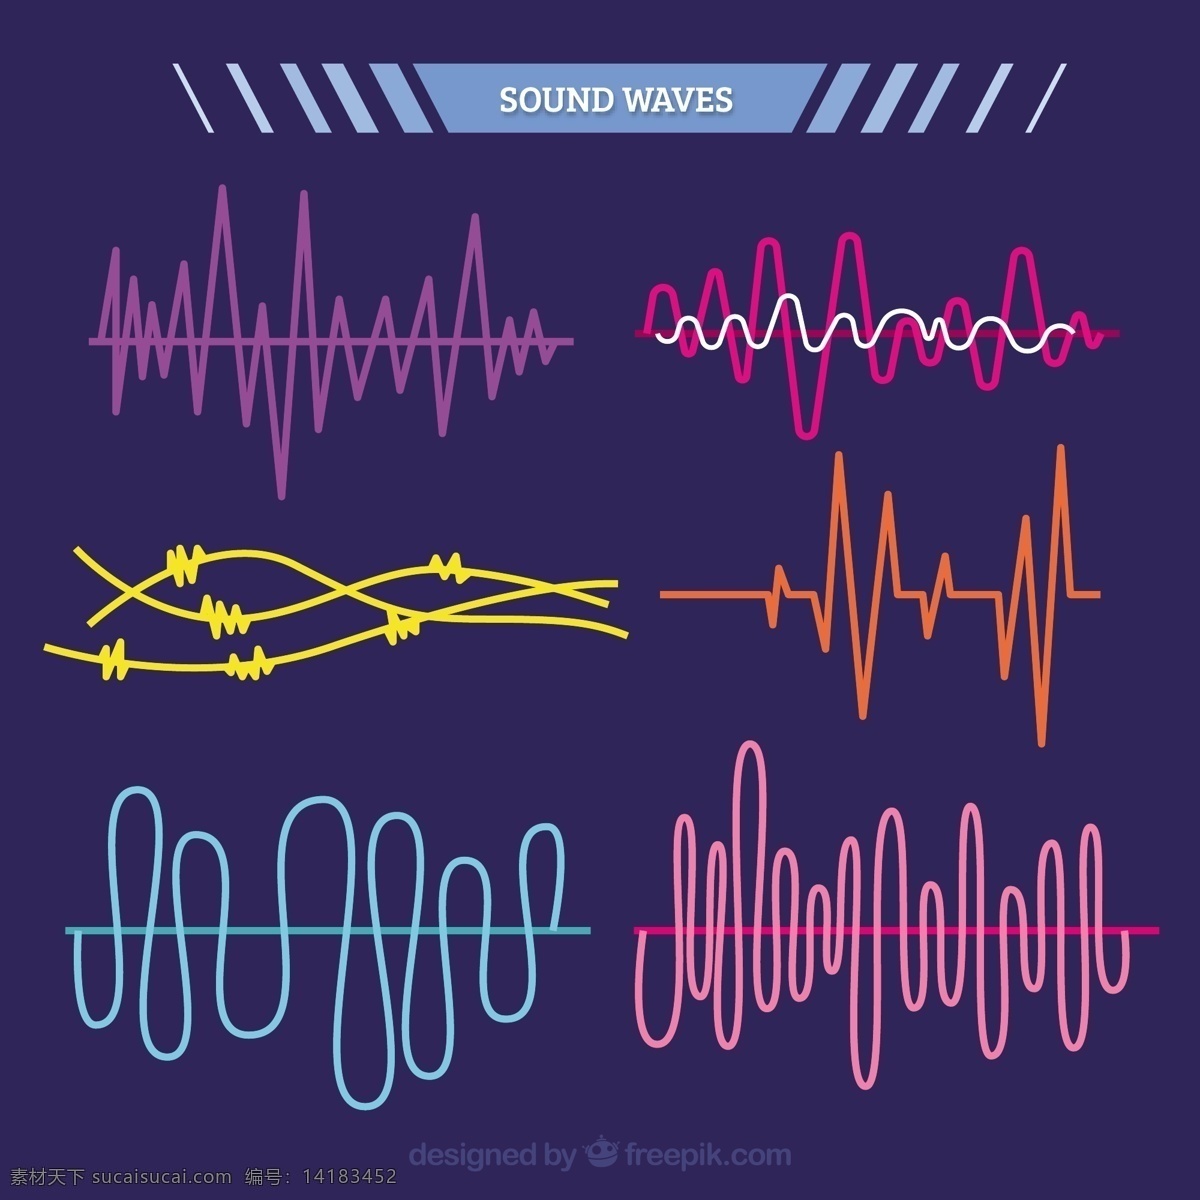 五颜六色 声波 包 音乐 技术 波浪 彩色 数字 声音 音频 录音 跟踪 均衡器 歌曲 包装 音量 频谱 波形 混音